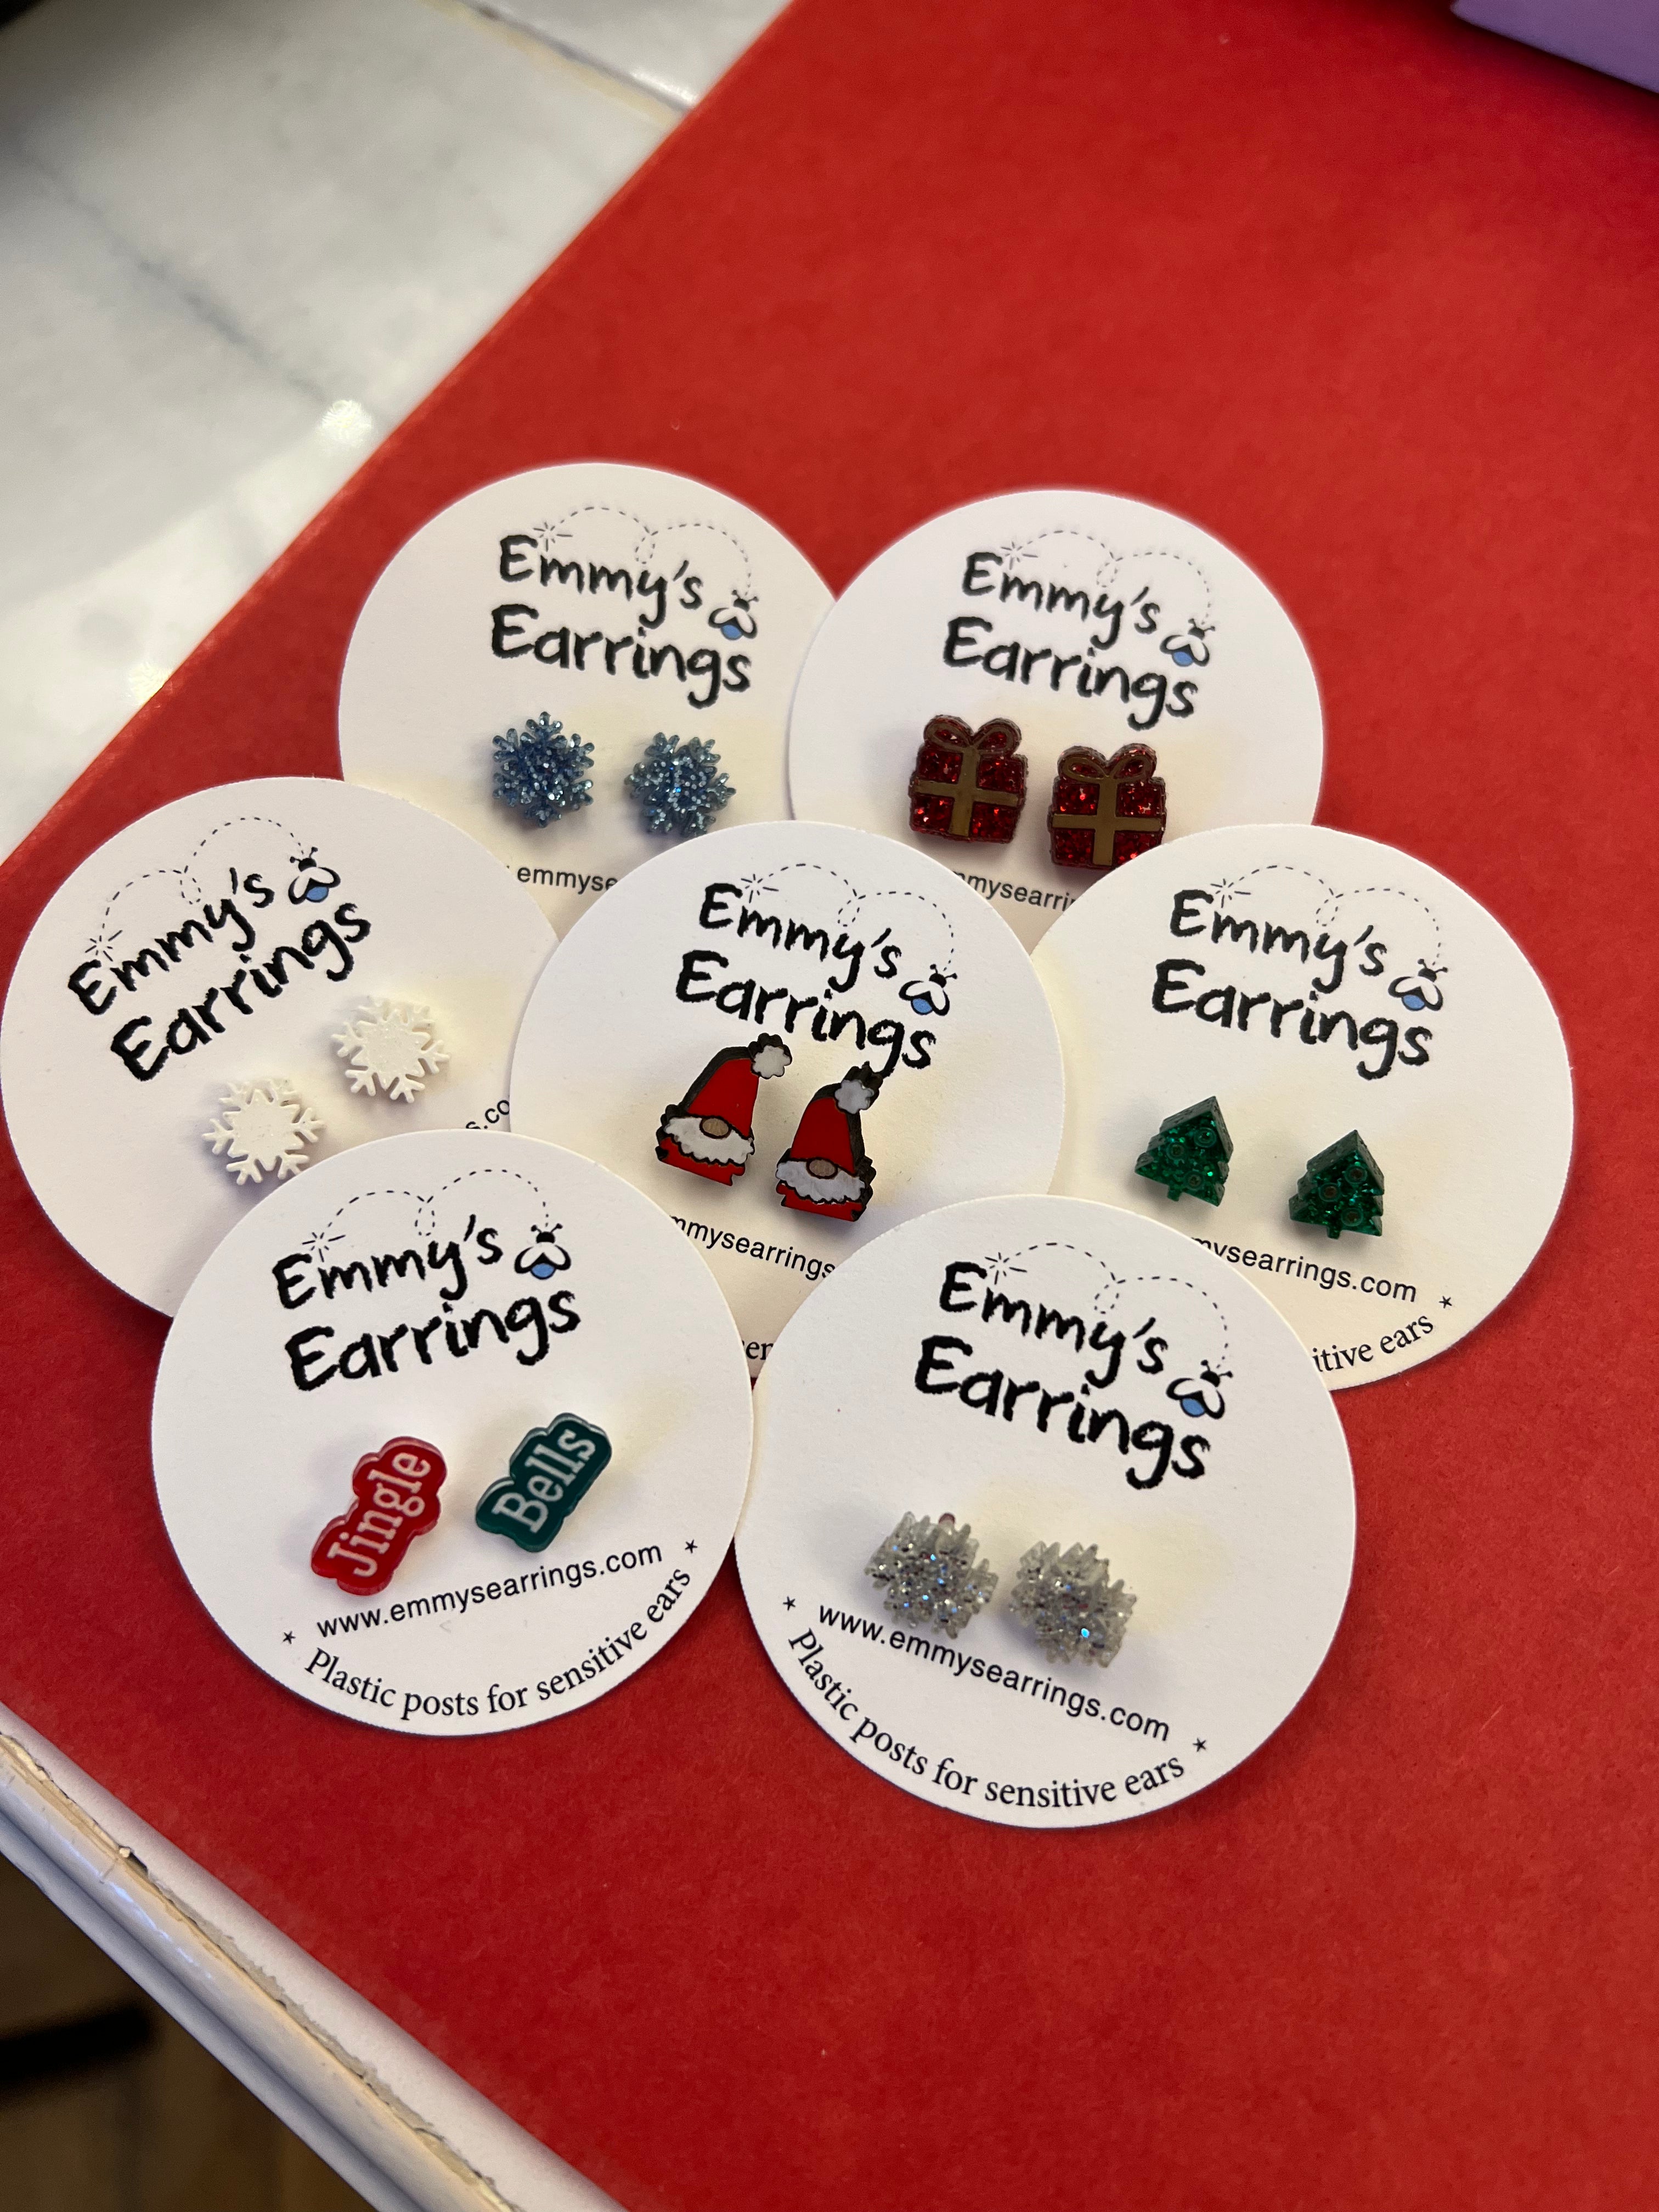 Emmy’s Earrings